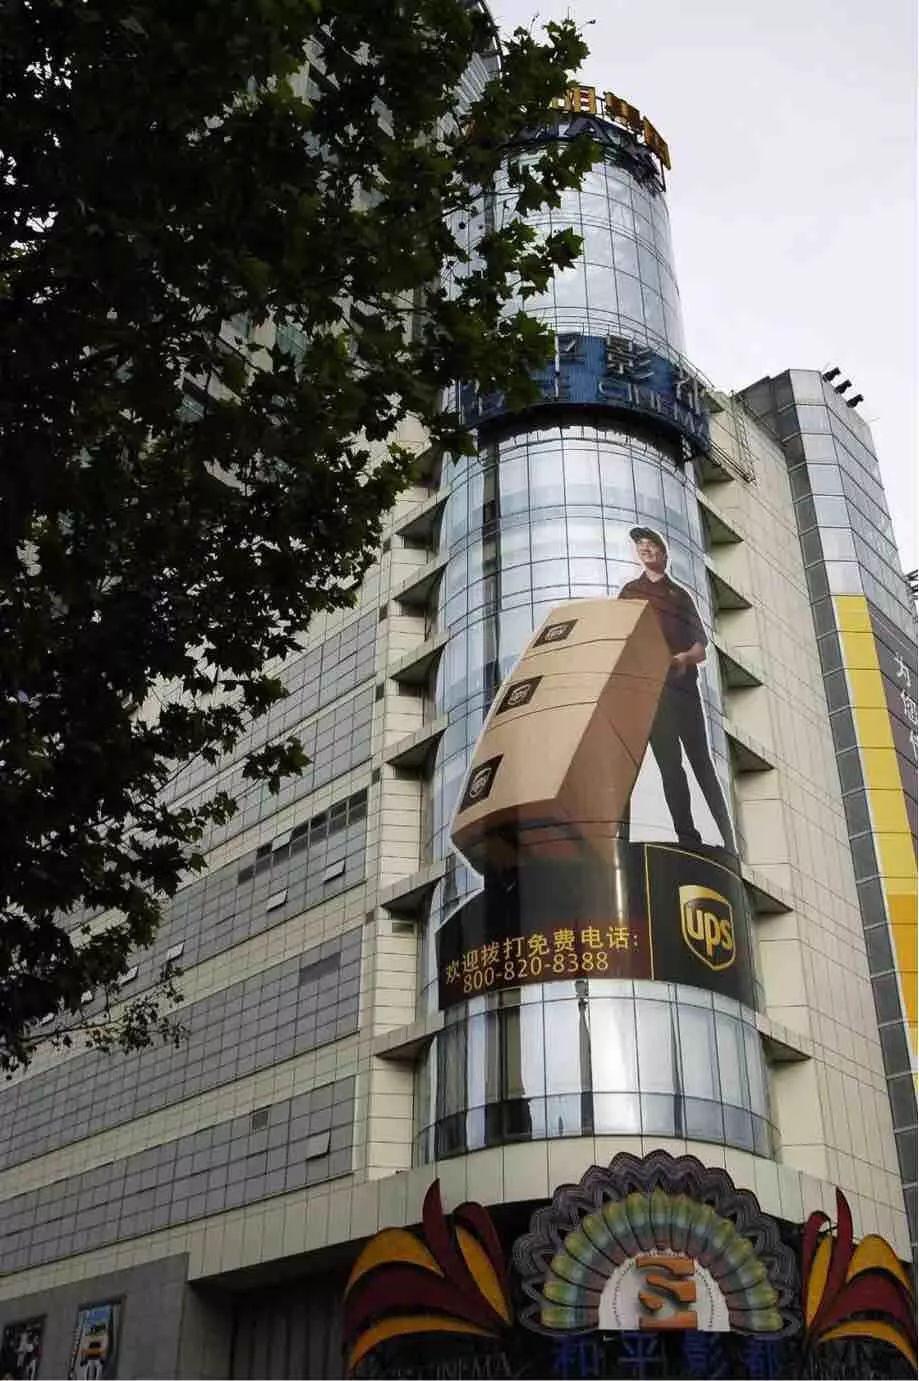 户外广告是上海的“脸”